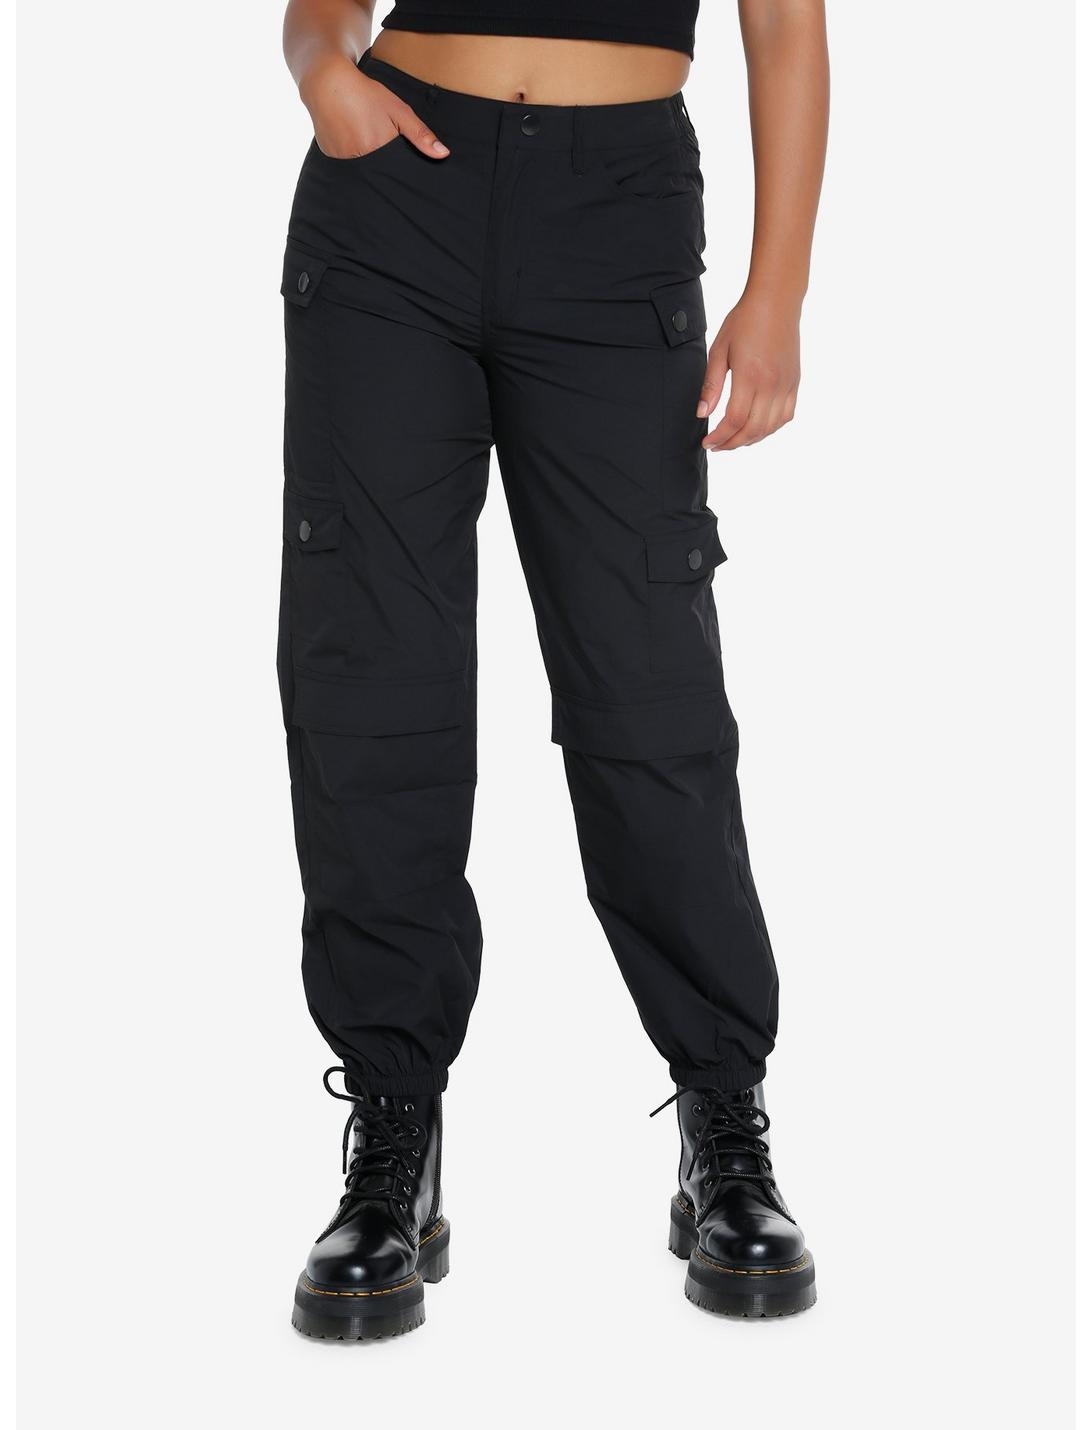 Black Cargo Jogger Pants, BLACK, hi-res